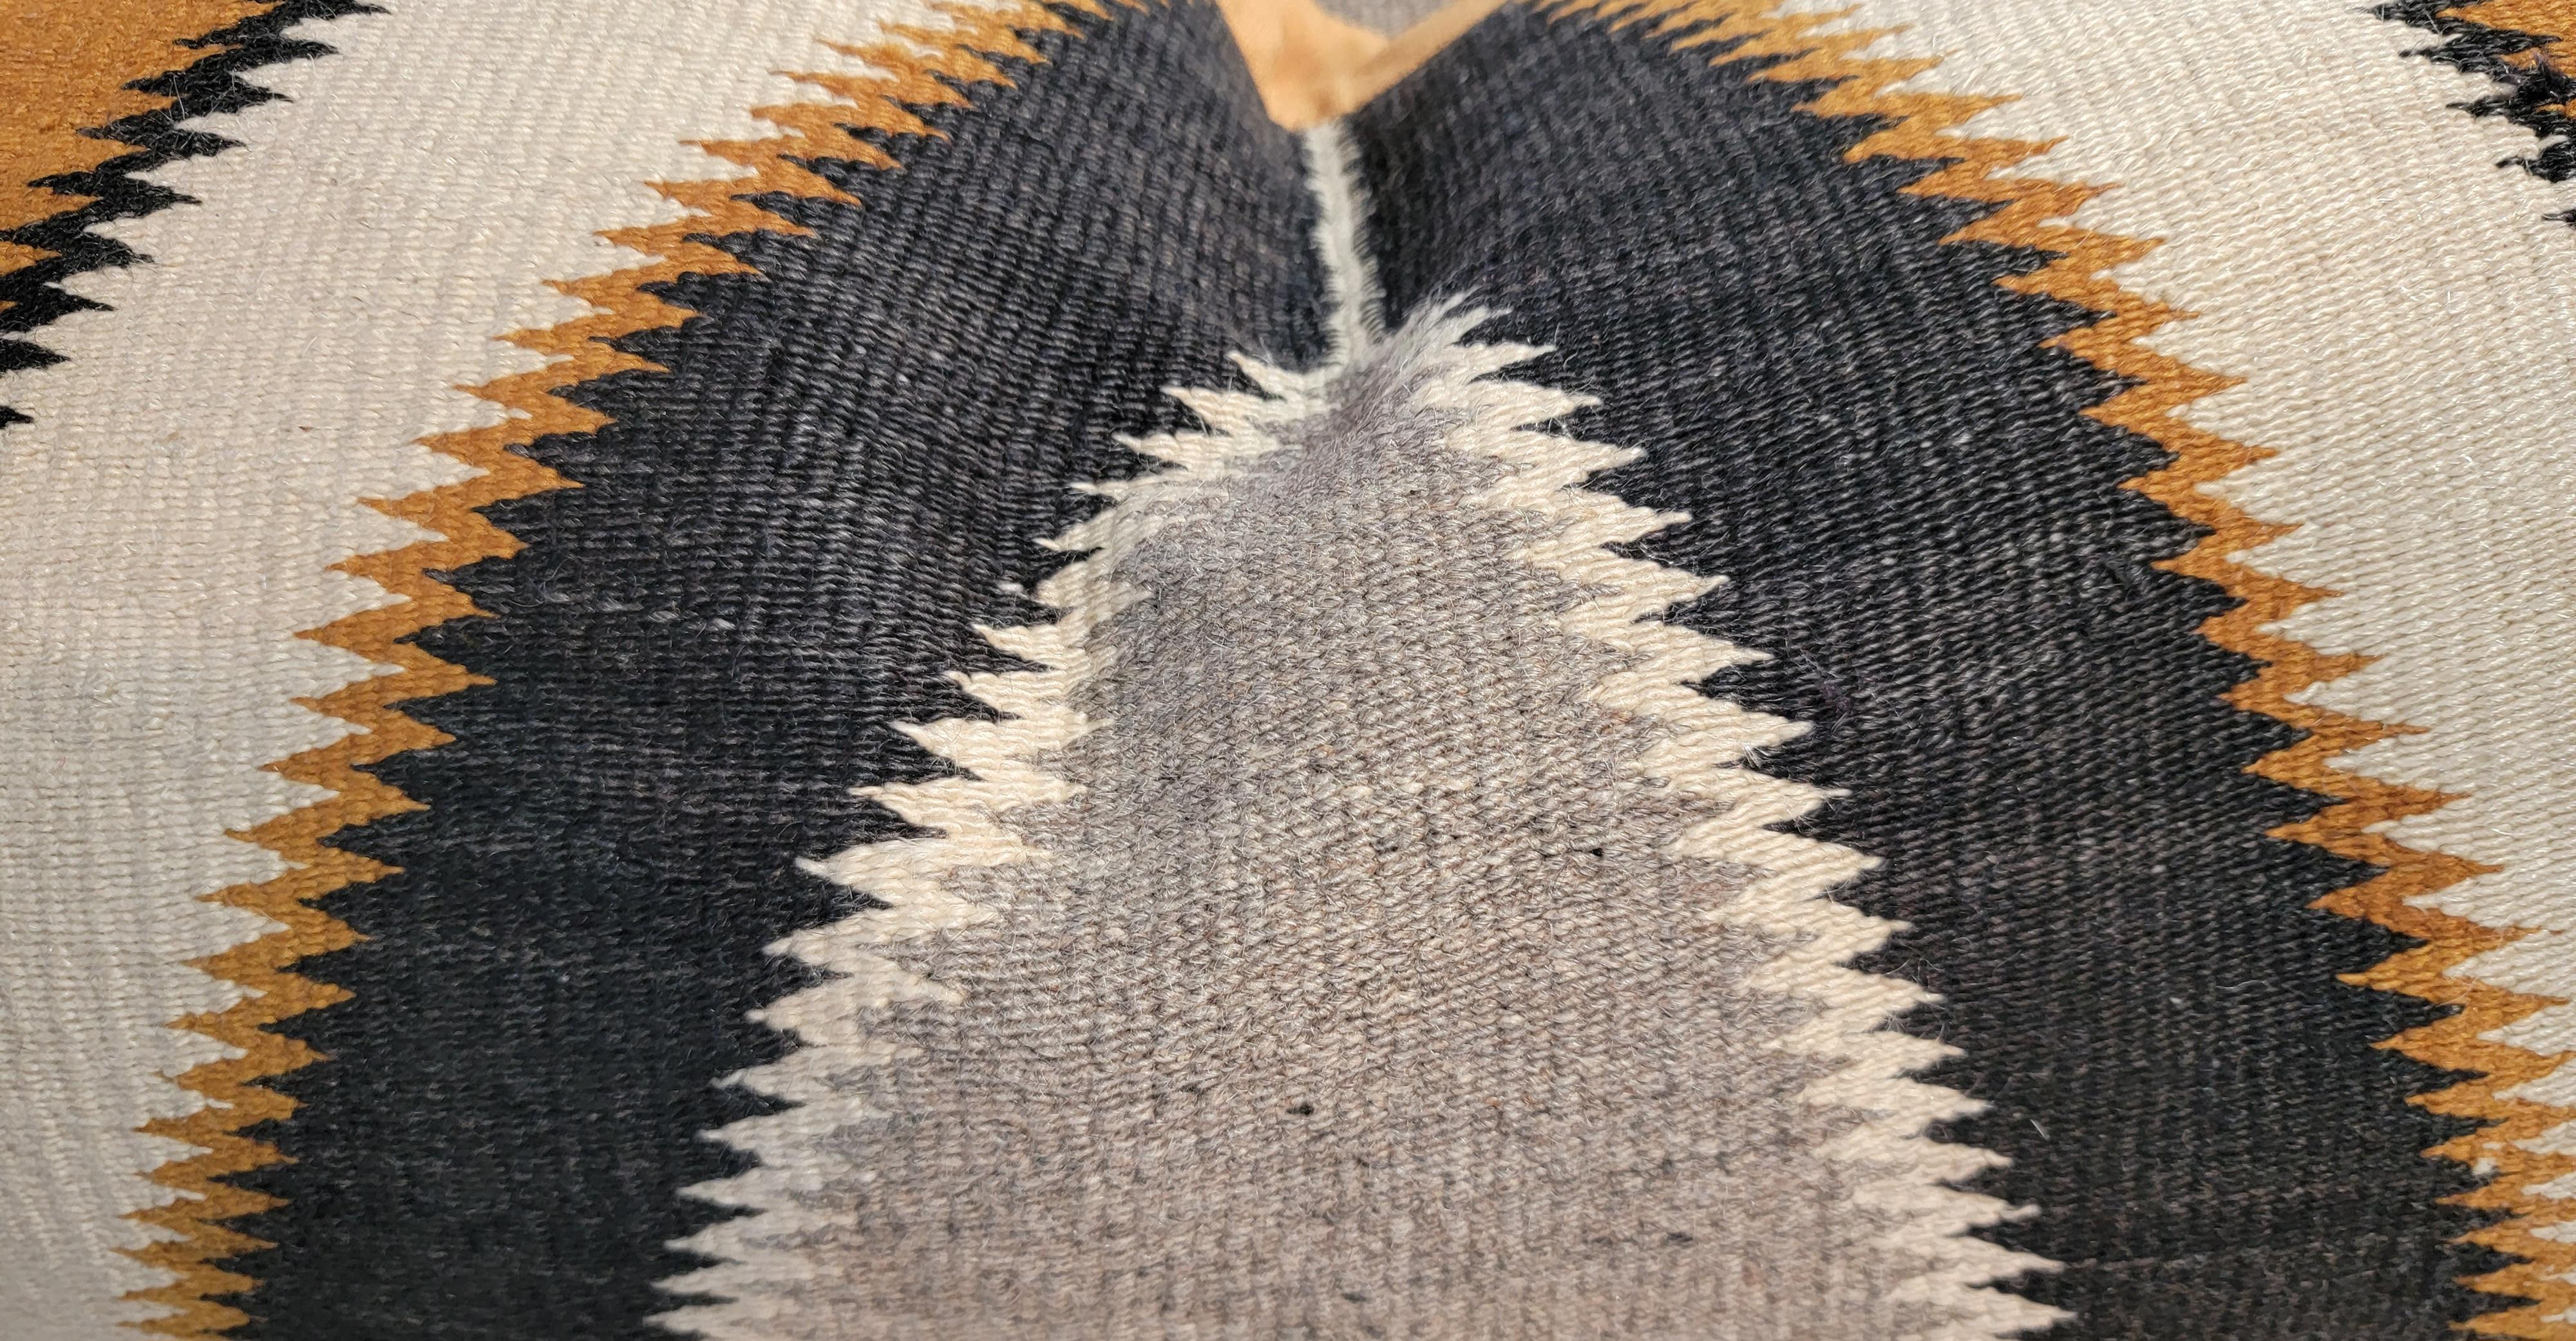 Coussins Chinle tissés par les Indiens Navajo, en deux tailles différentes. Ces coussins géométriques étonnants sont recouverts de lin en coton doré. Vendus par trois.
les grands oreillers mesurent - 24 x 32
La paire de coussins plus petits mesure